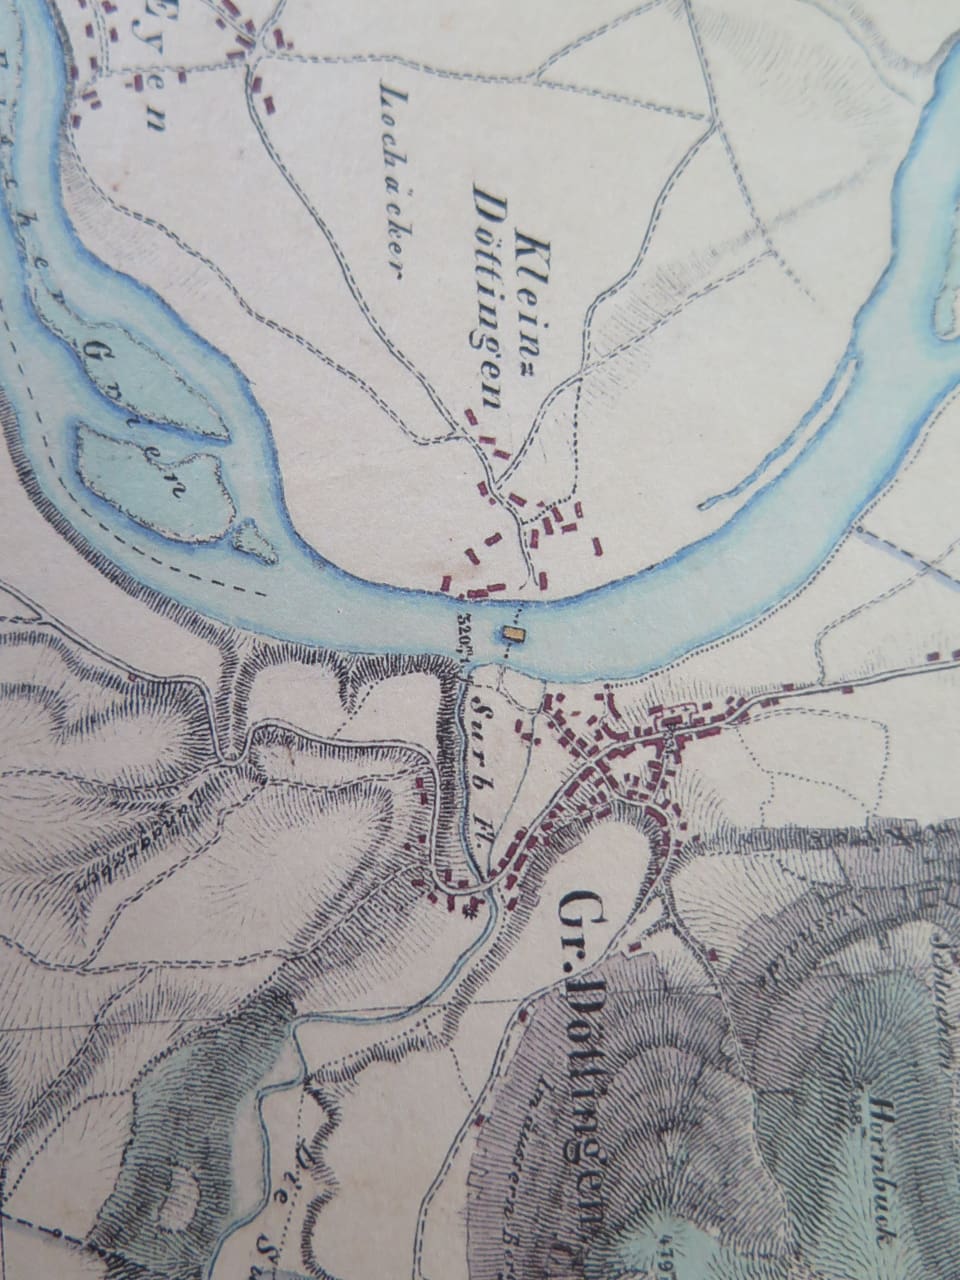 Karte, eingezeichnet sind zwei Dörfer und ein Fluss.